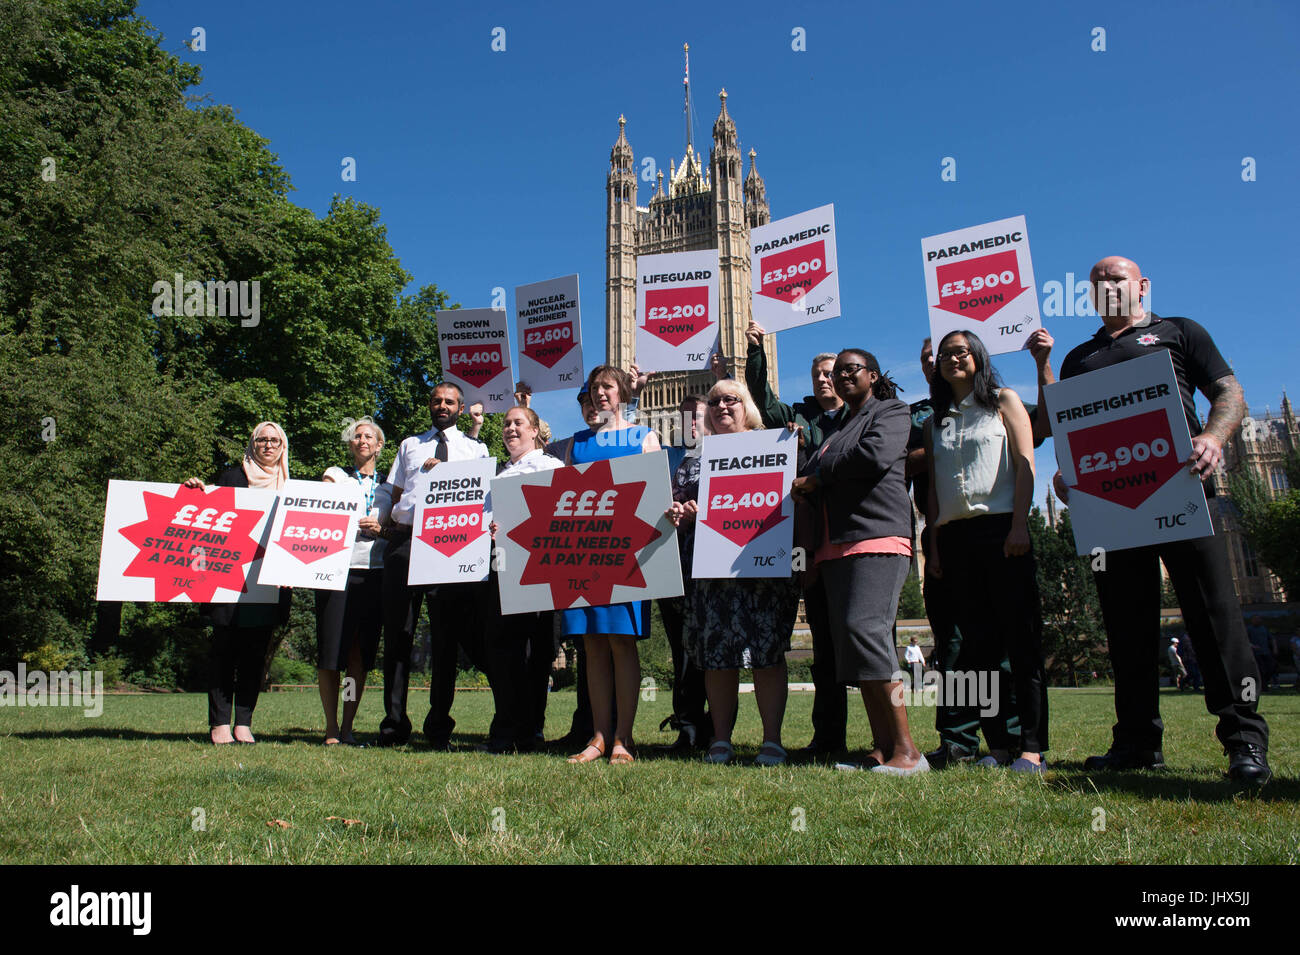 TUC segretario generale Frances O'Grady (centro) unisce i lavoratori in uniforme a una protesta su le retribuzioni del settore pubblico a torre di Victoria Gardens, Londra. Foto Stock